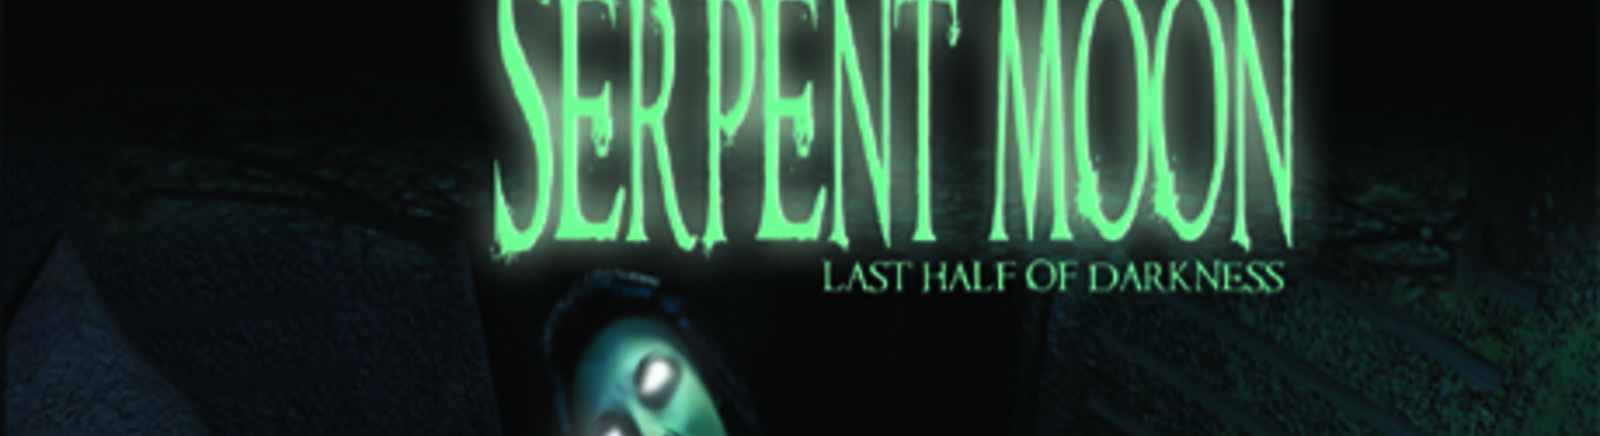 Дата выхода Last Half of Darkness: Society of the Serpent Moon  на PC в России и во всем мире